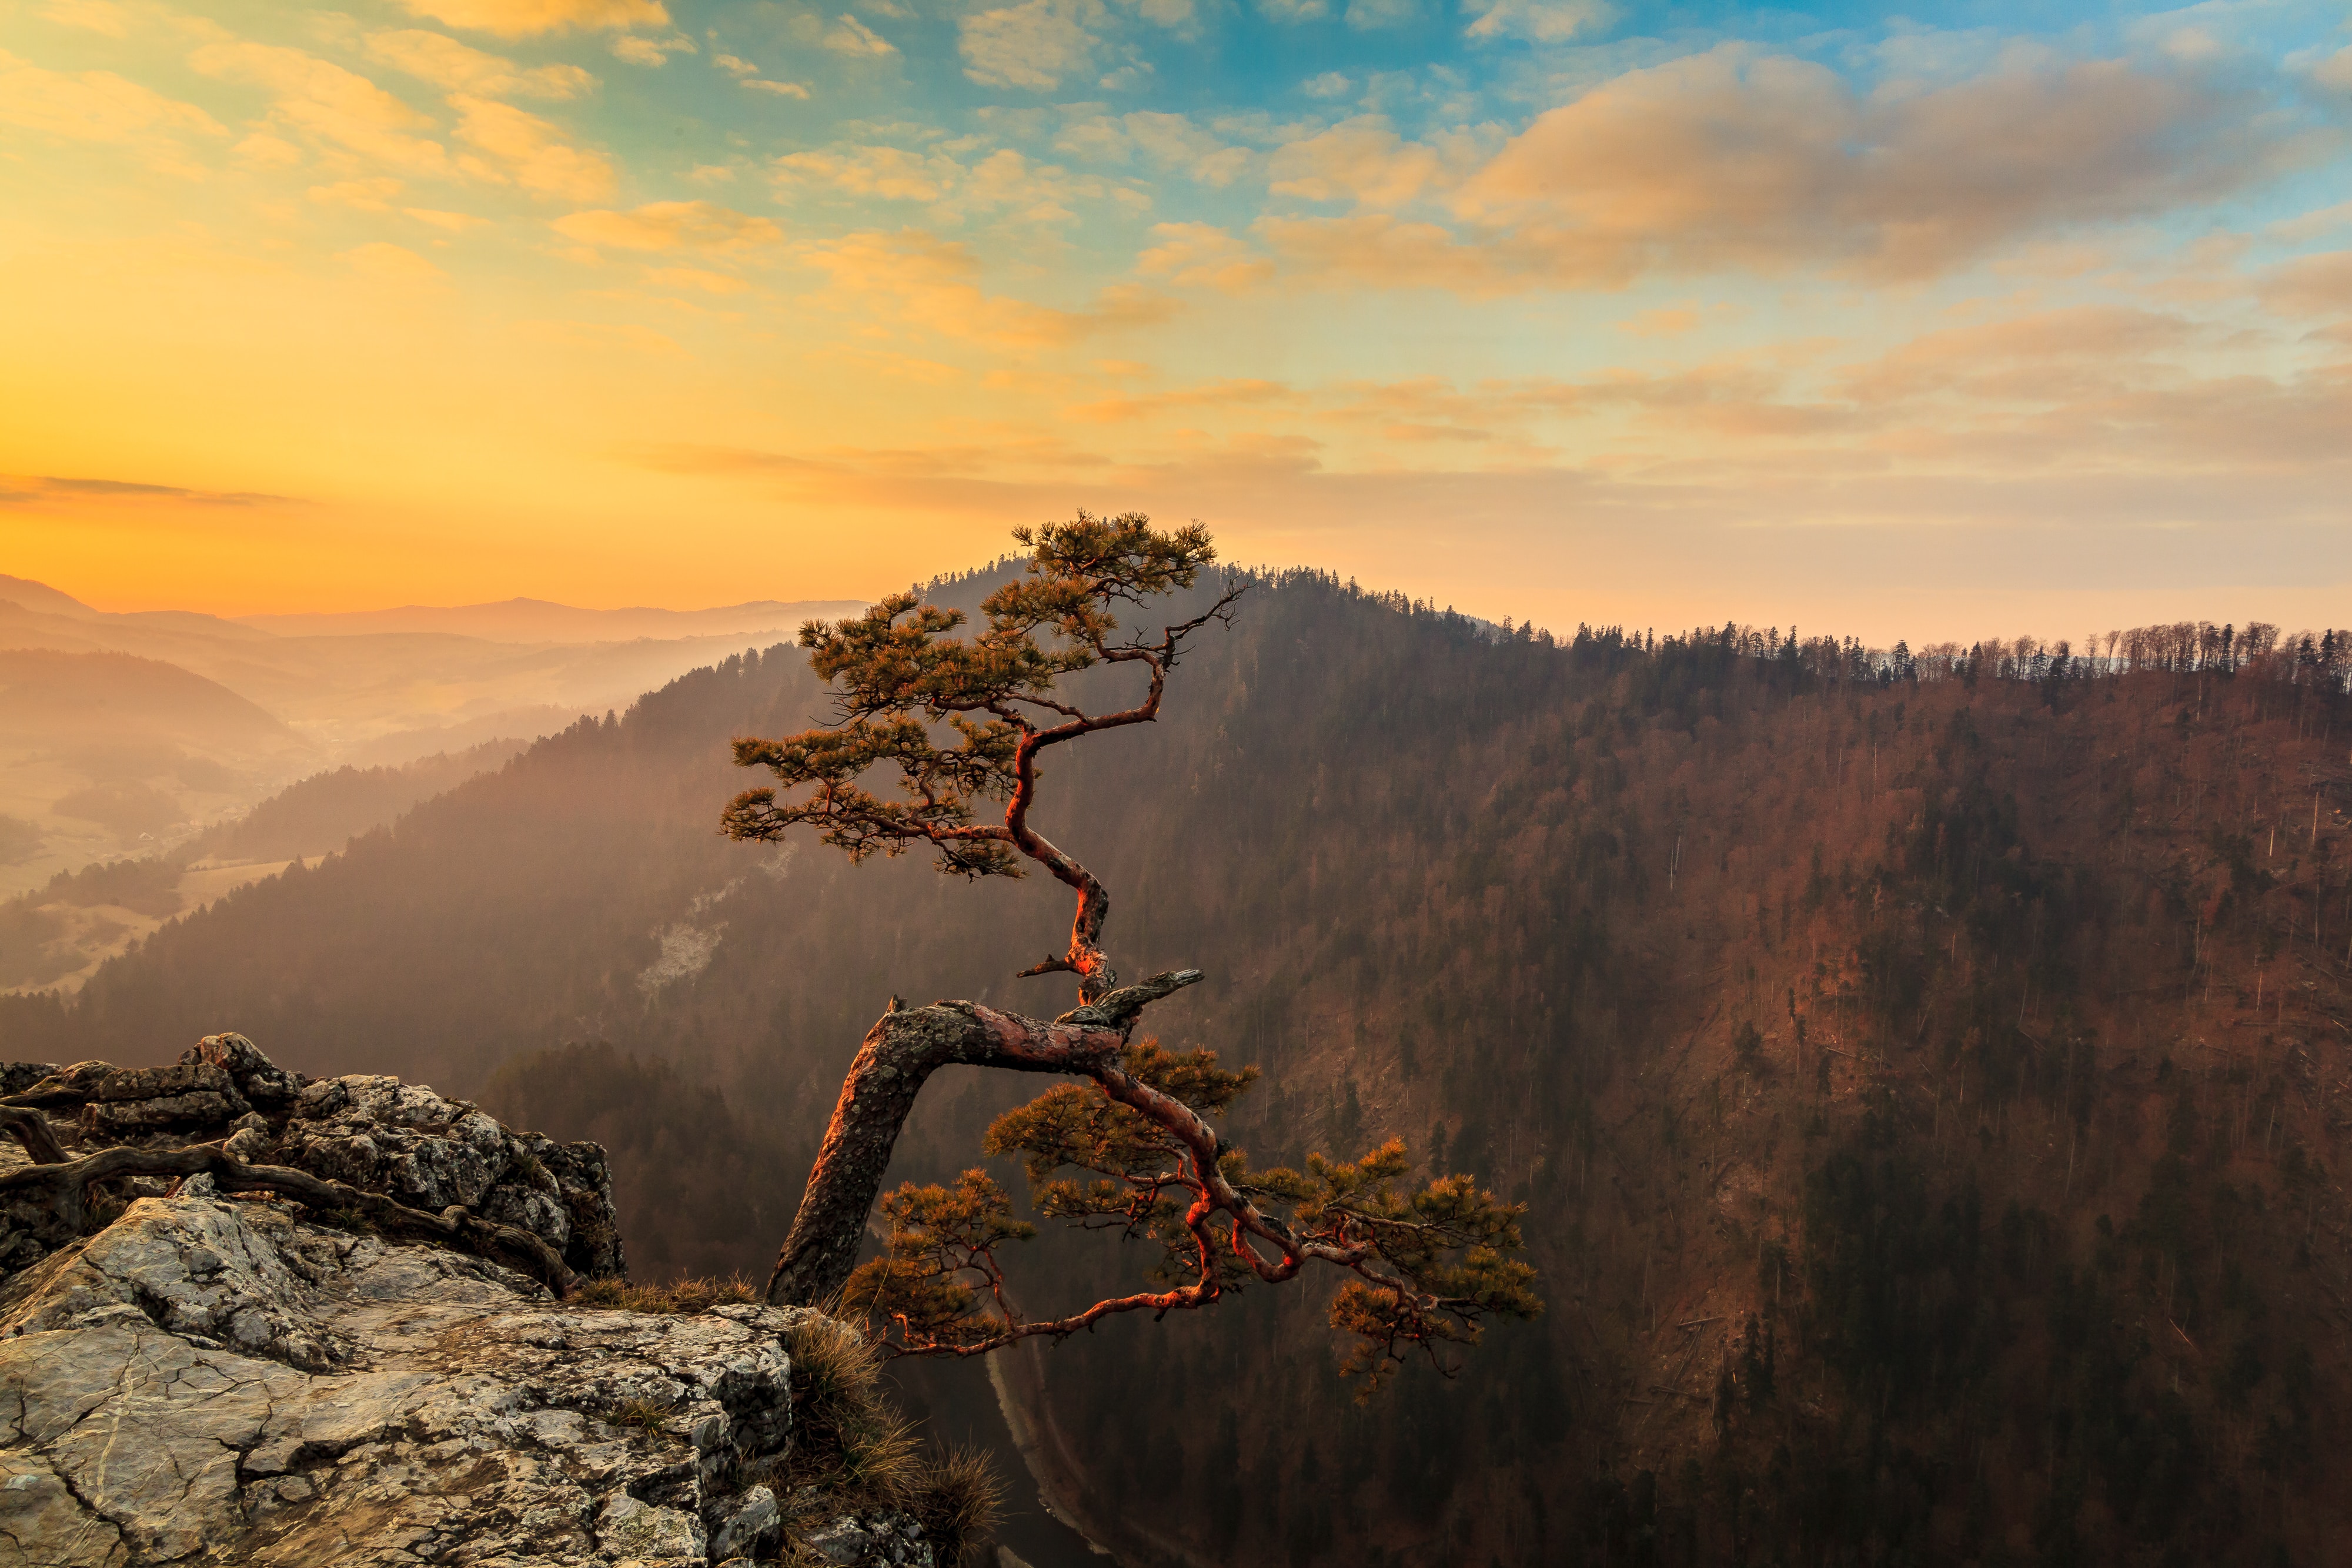 A lone tree along a mountain ridge by Maciek Sulkowski